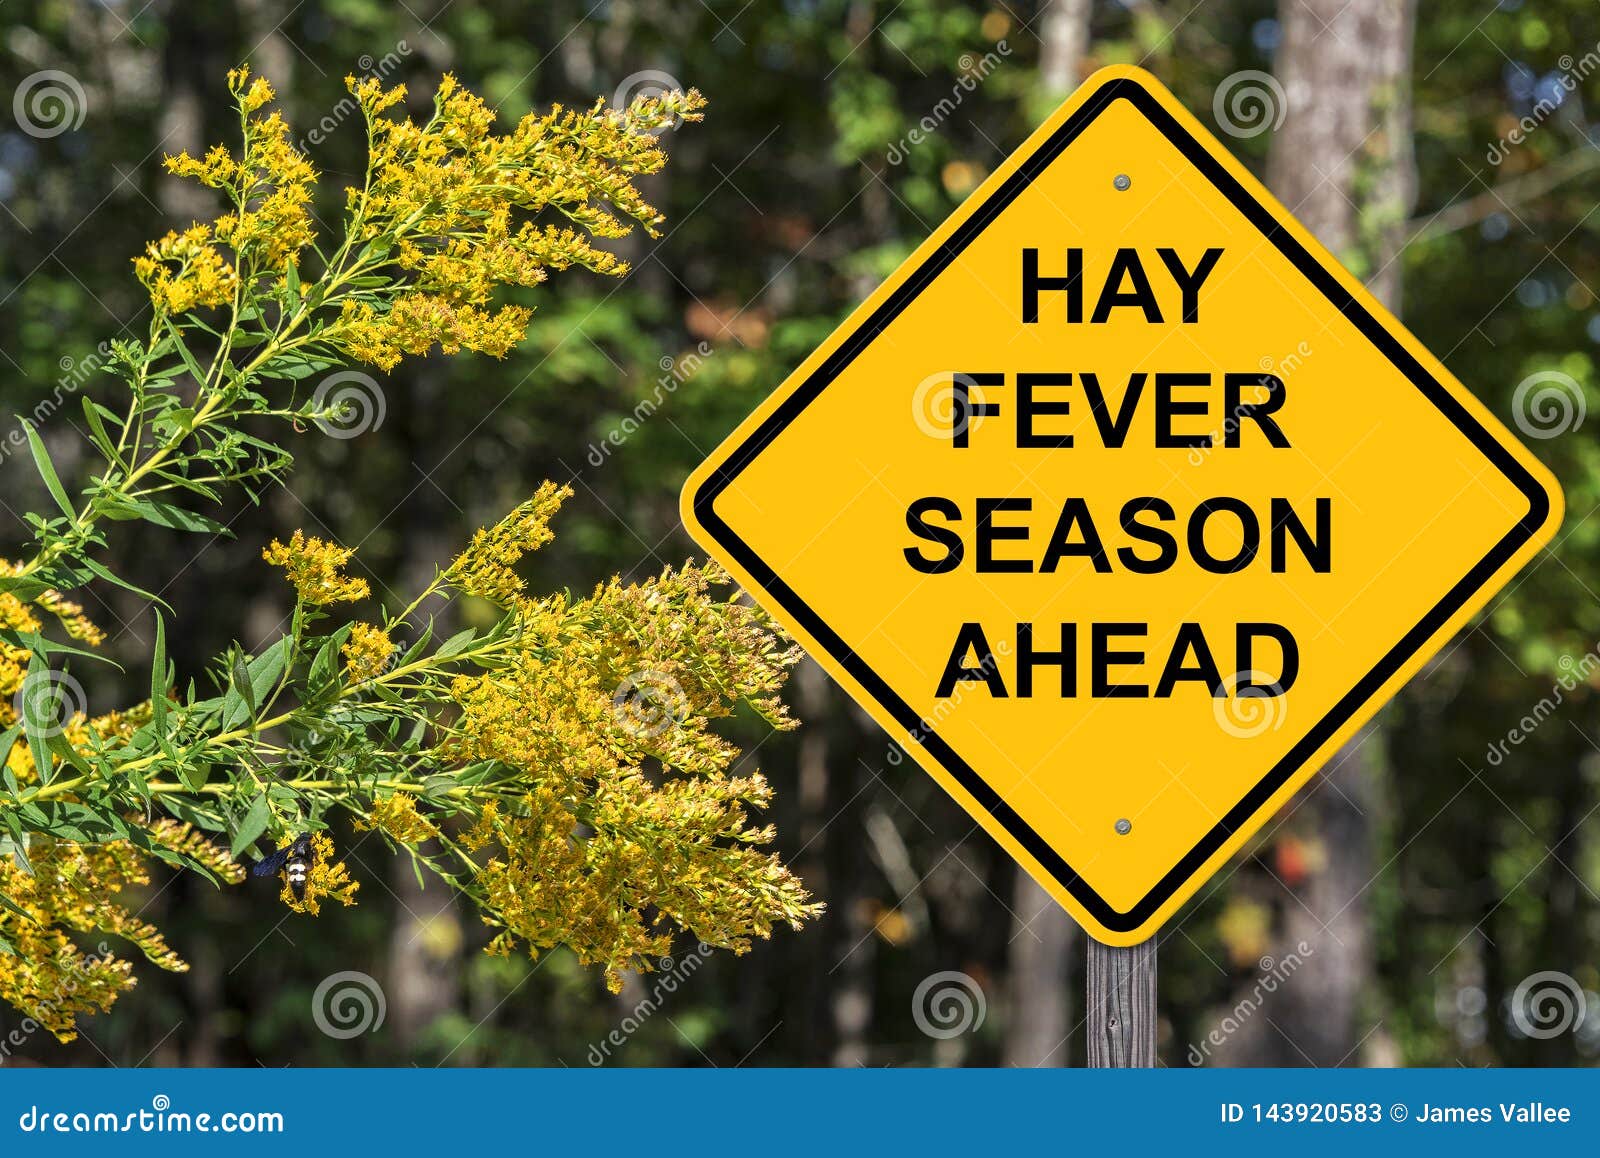 hay fever season ahead warning sign